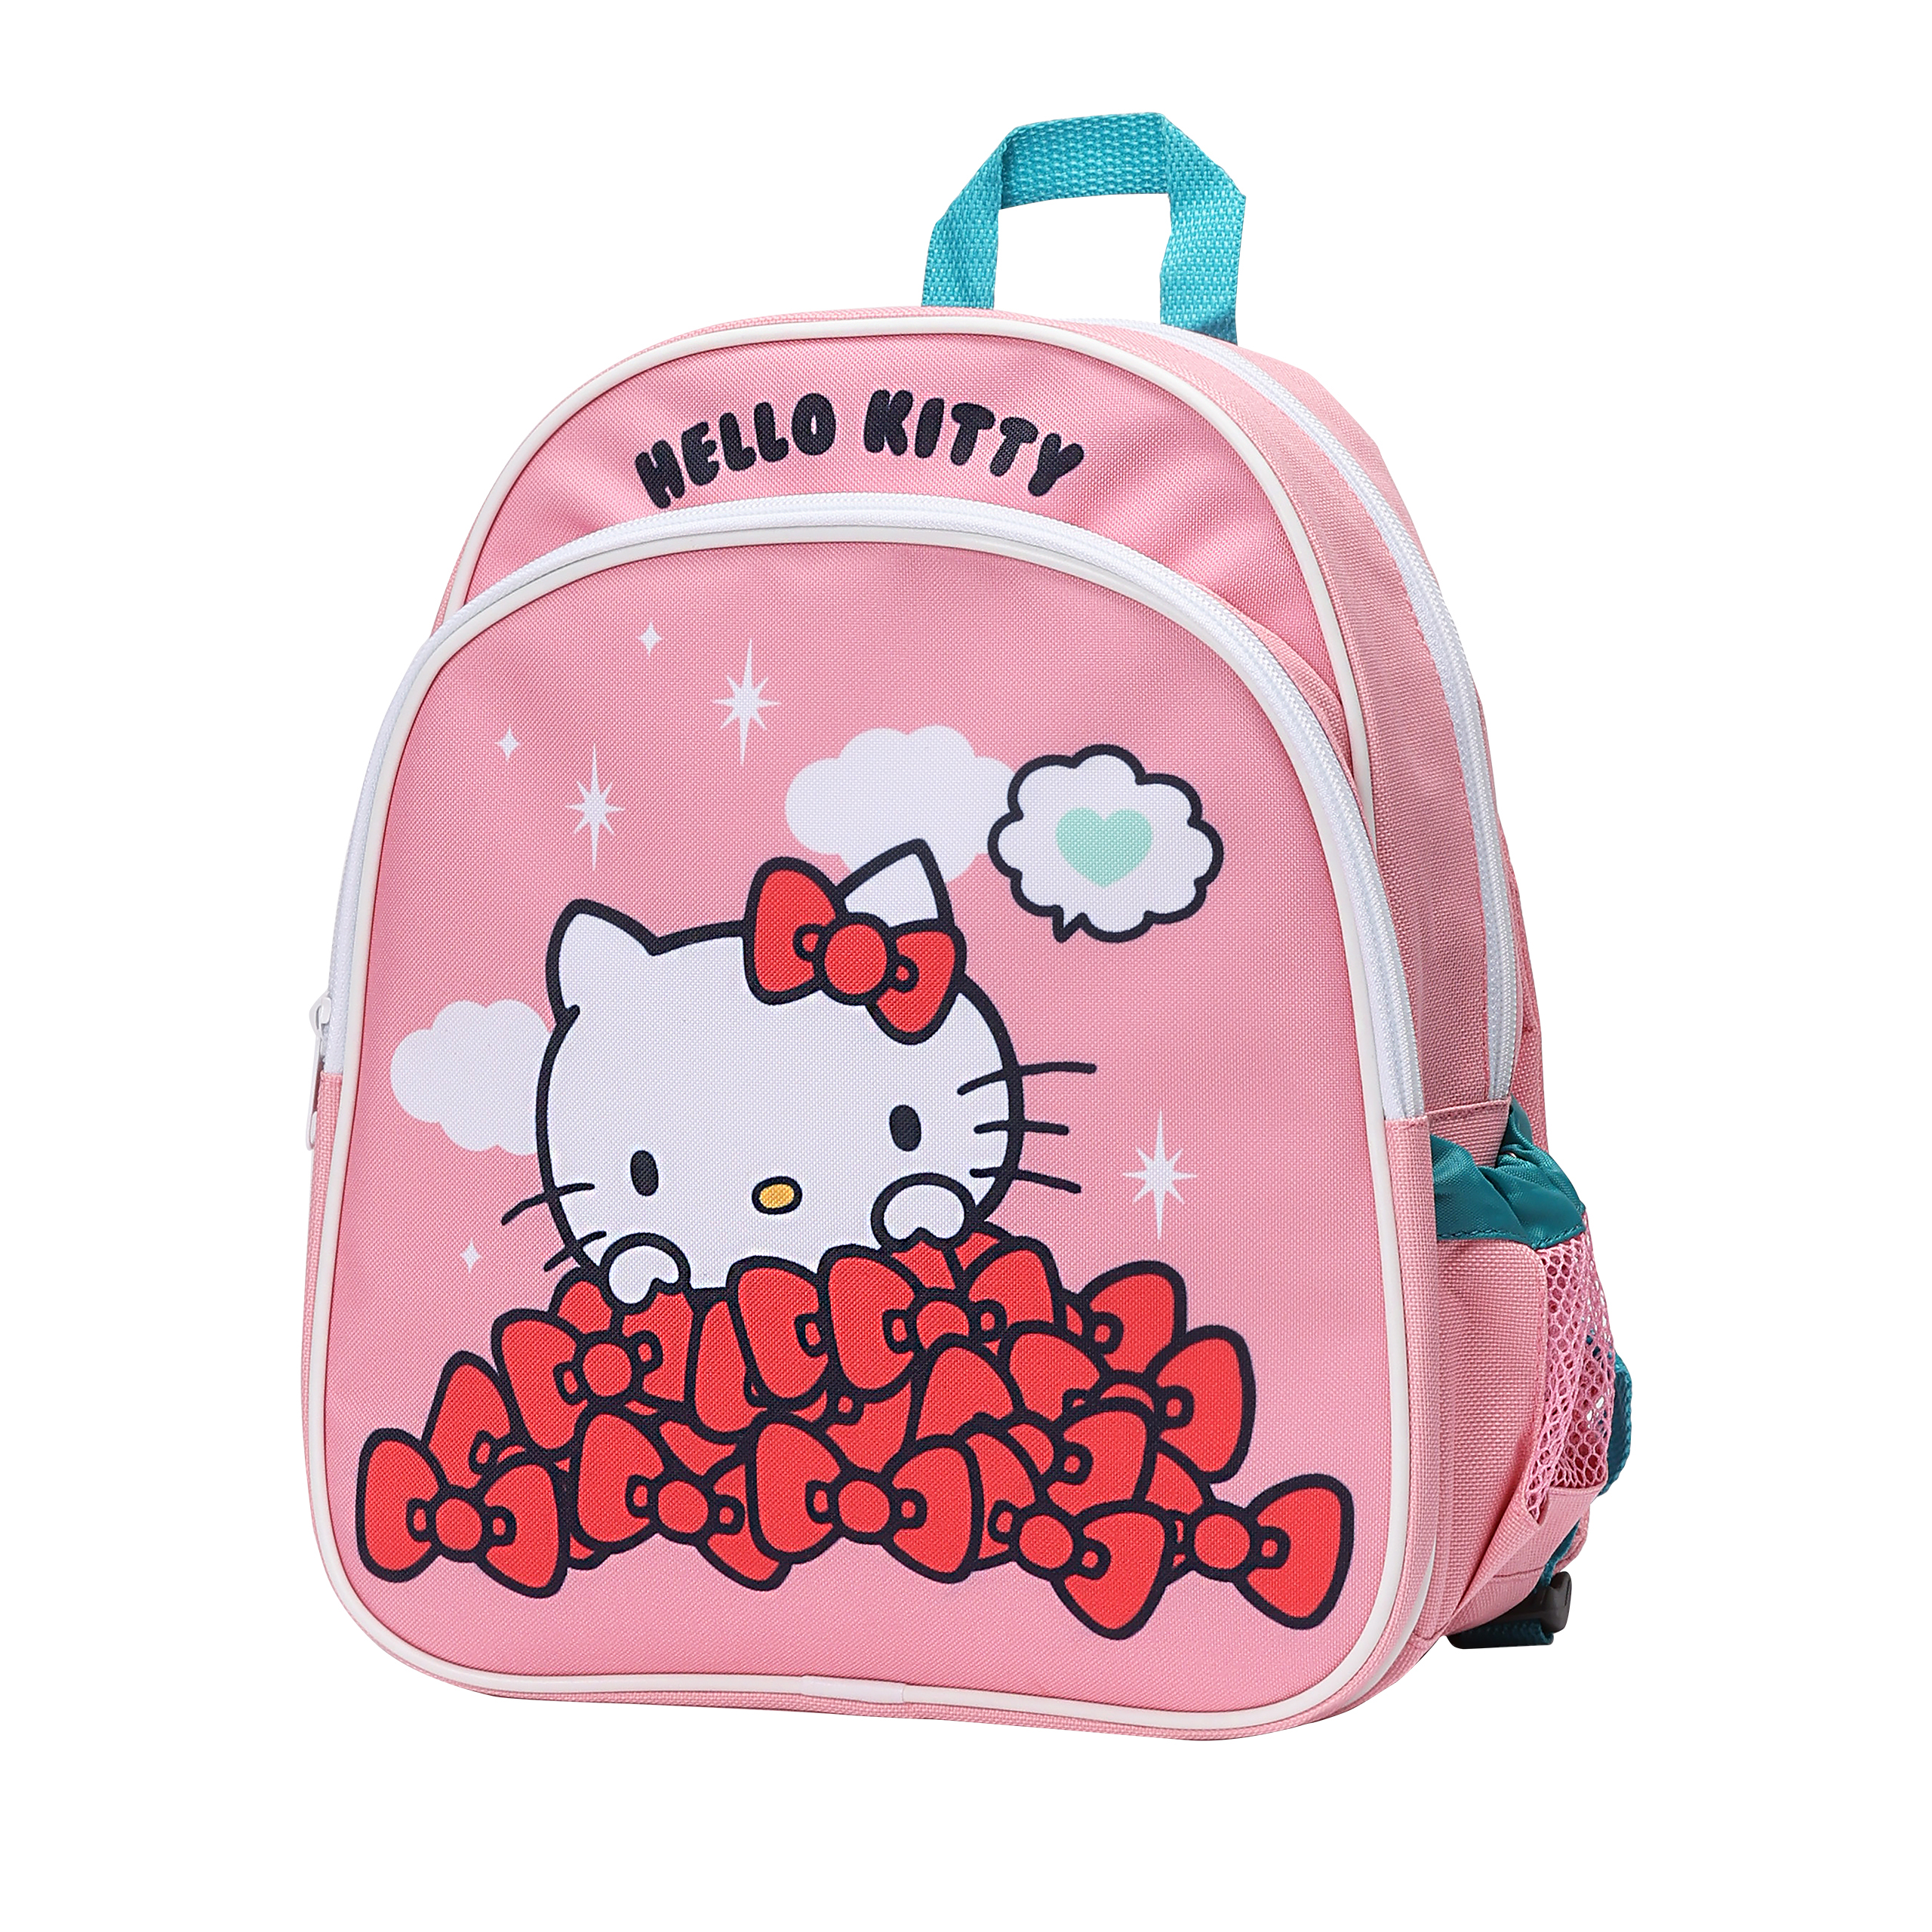 Hello Kitty and Friends hello kitty kindertasche rucksack